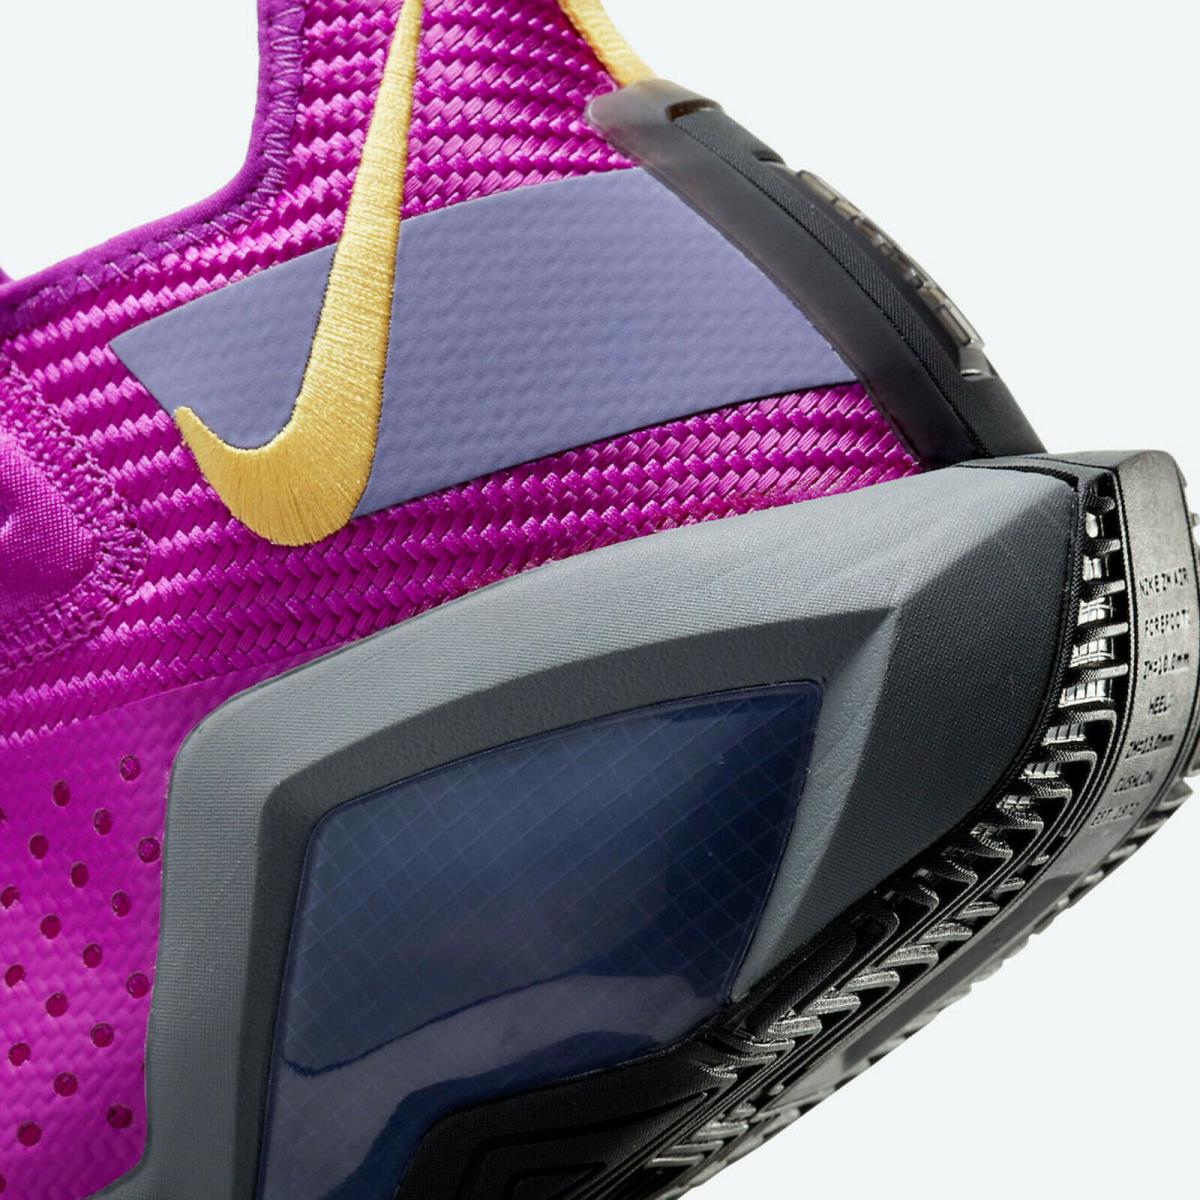 Nike shoes LeBron Soldier XIV - Yellow / Purple 6